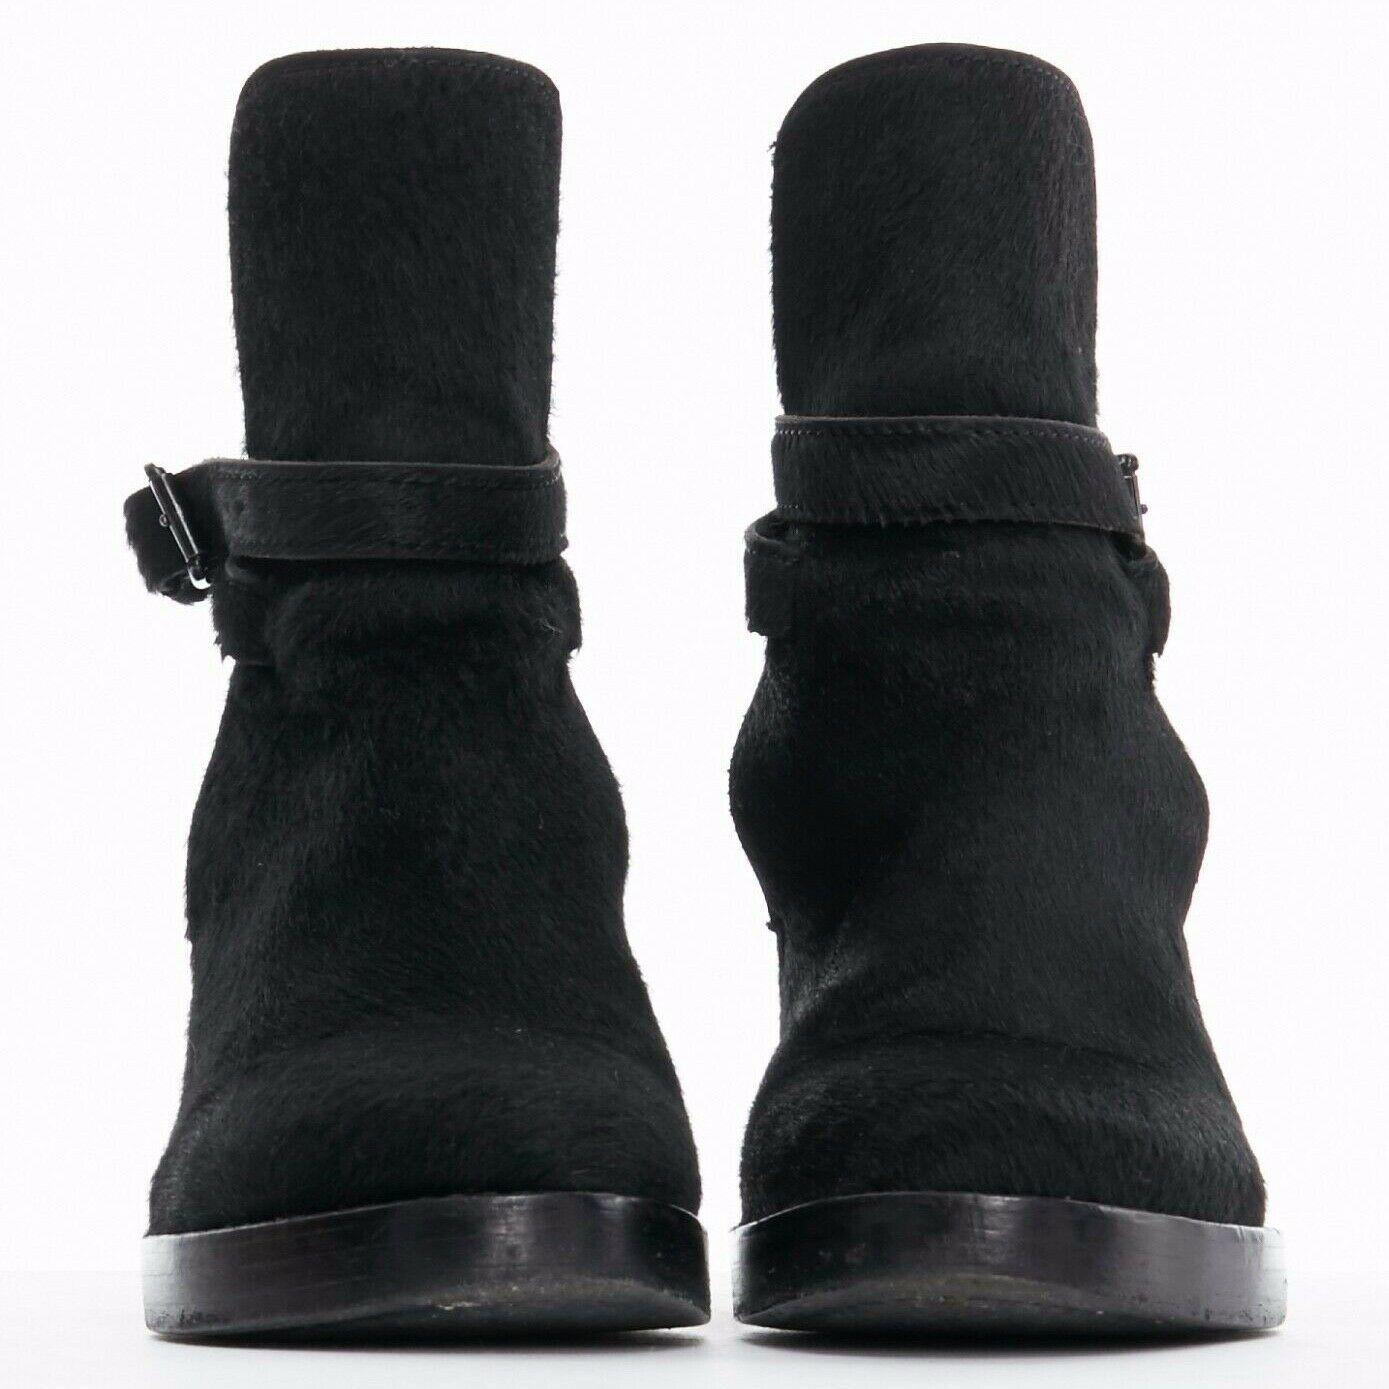 Black ANN DEMEULEMEESTER pony skin belted platform ankle boots shoes EU36 US6 UK3